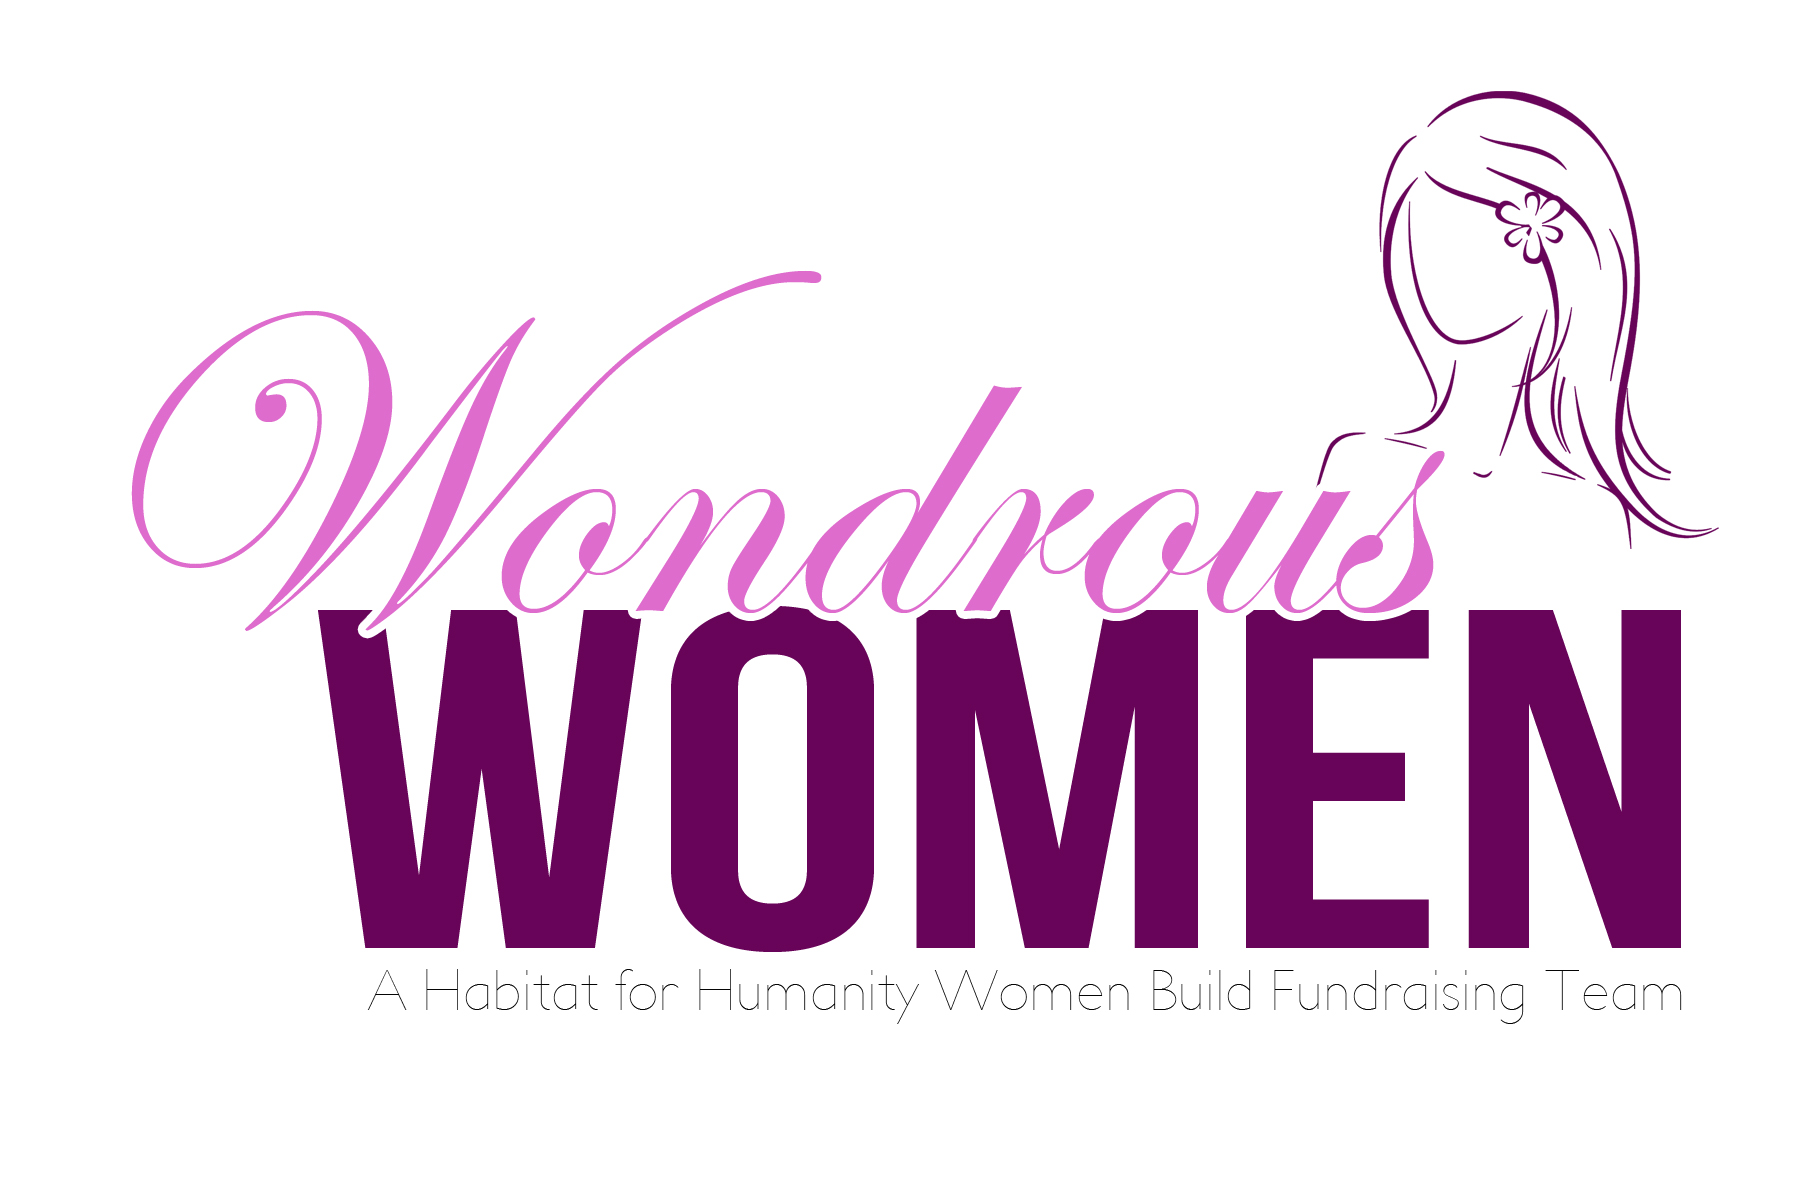 Wondrous Women